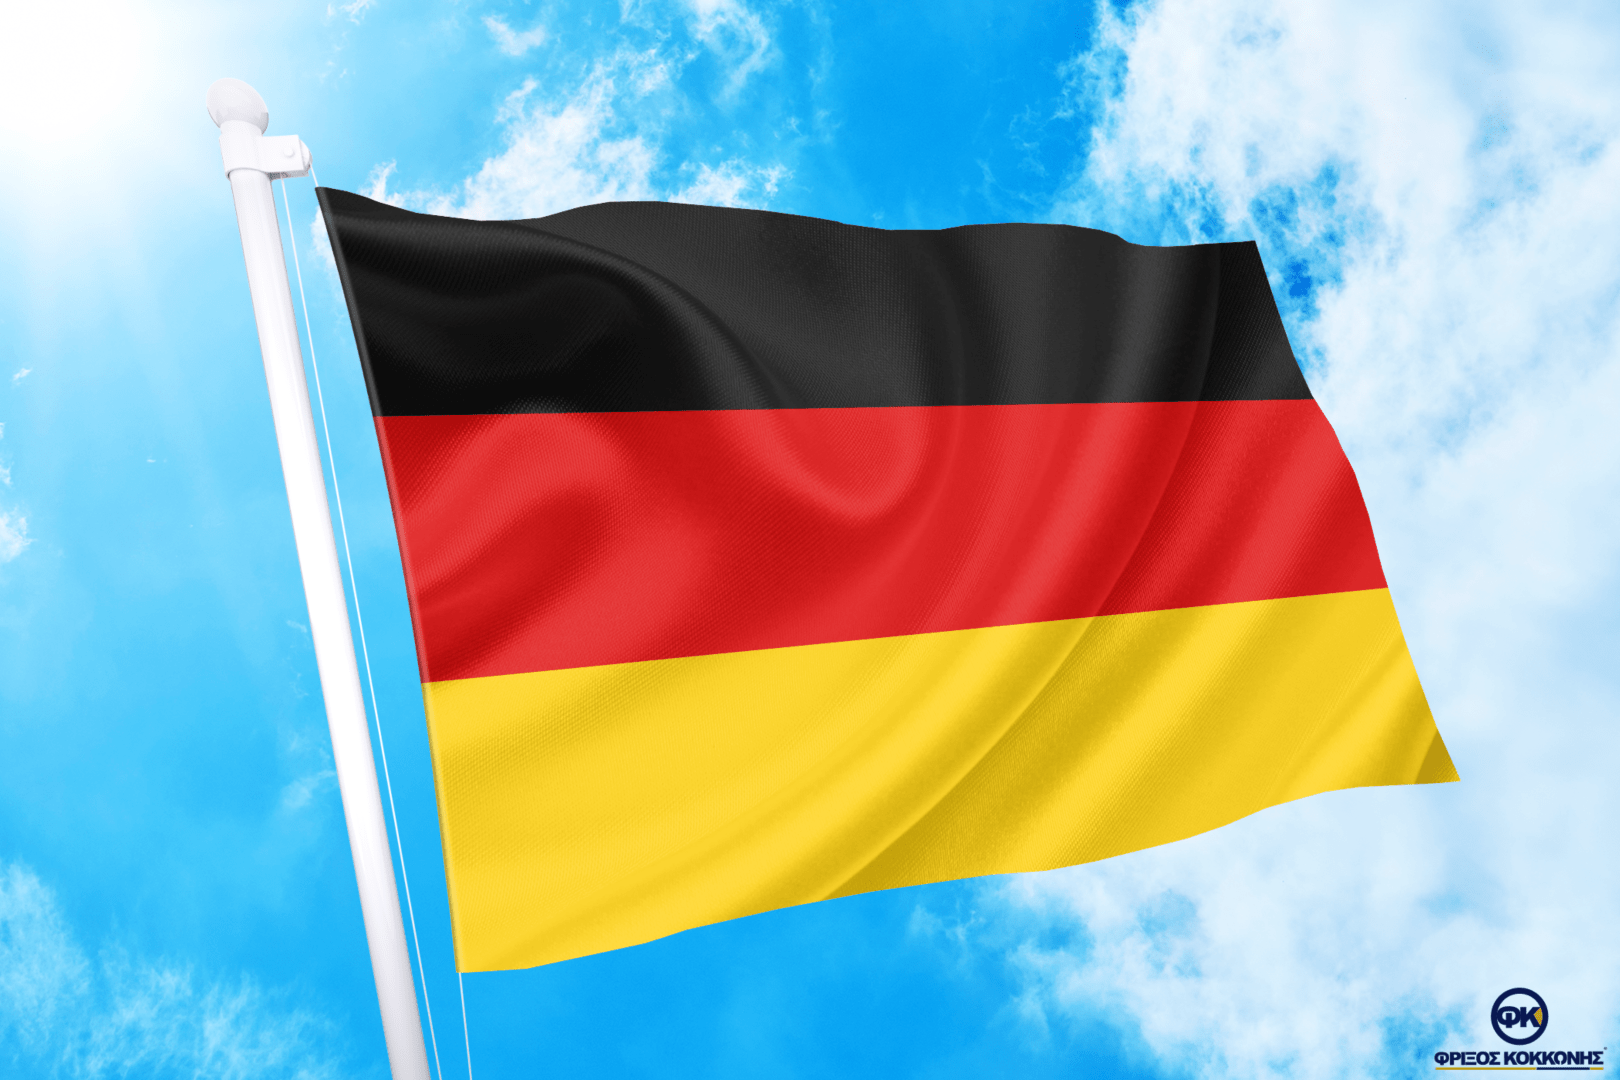 ΑΓΟΡΑ-ΤΙΜΕΣ-ΣΗΜΑΙΕΣ-χωρων -κρατων διαστασεις-ΚΟΚΚΩΝΗΣ---γερμανία σημαια κοκκωνης σημαιες germany flag